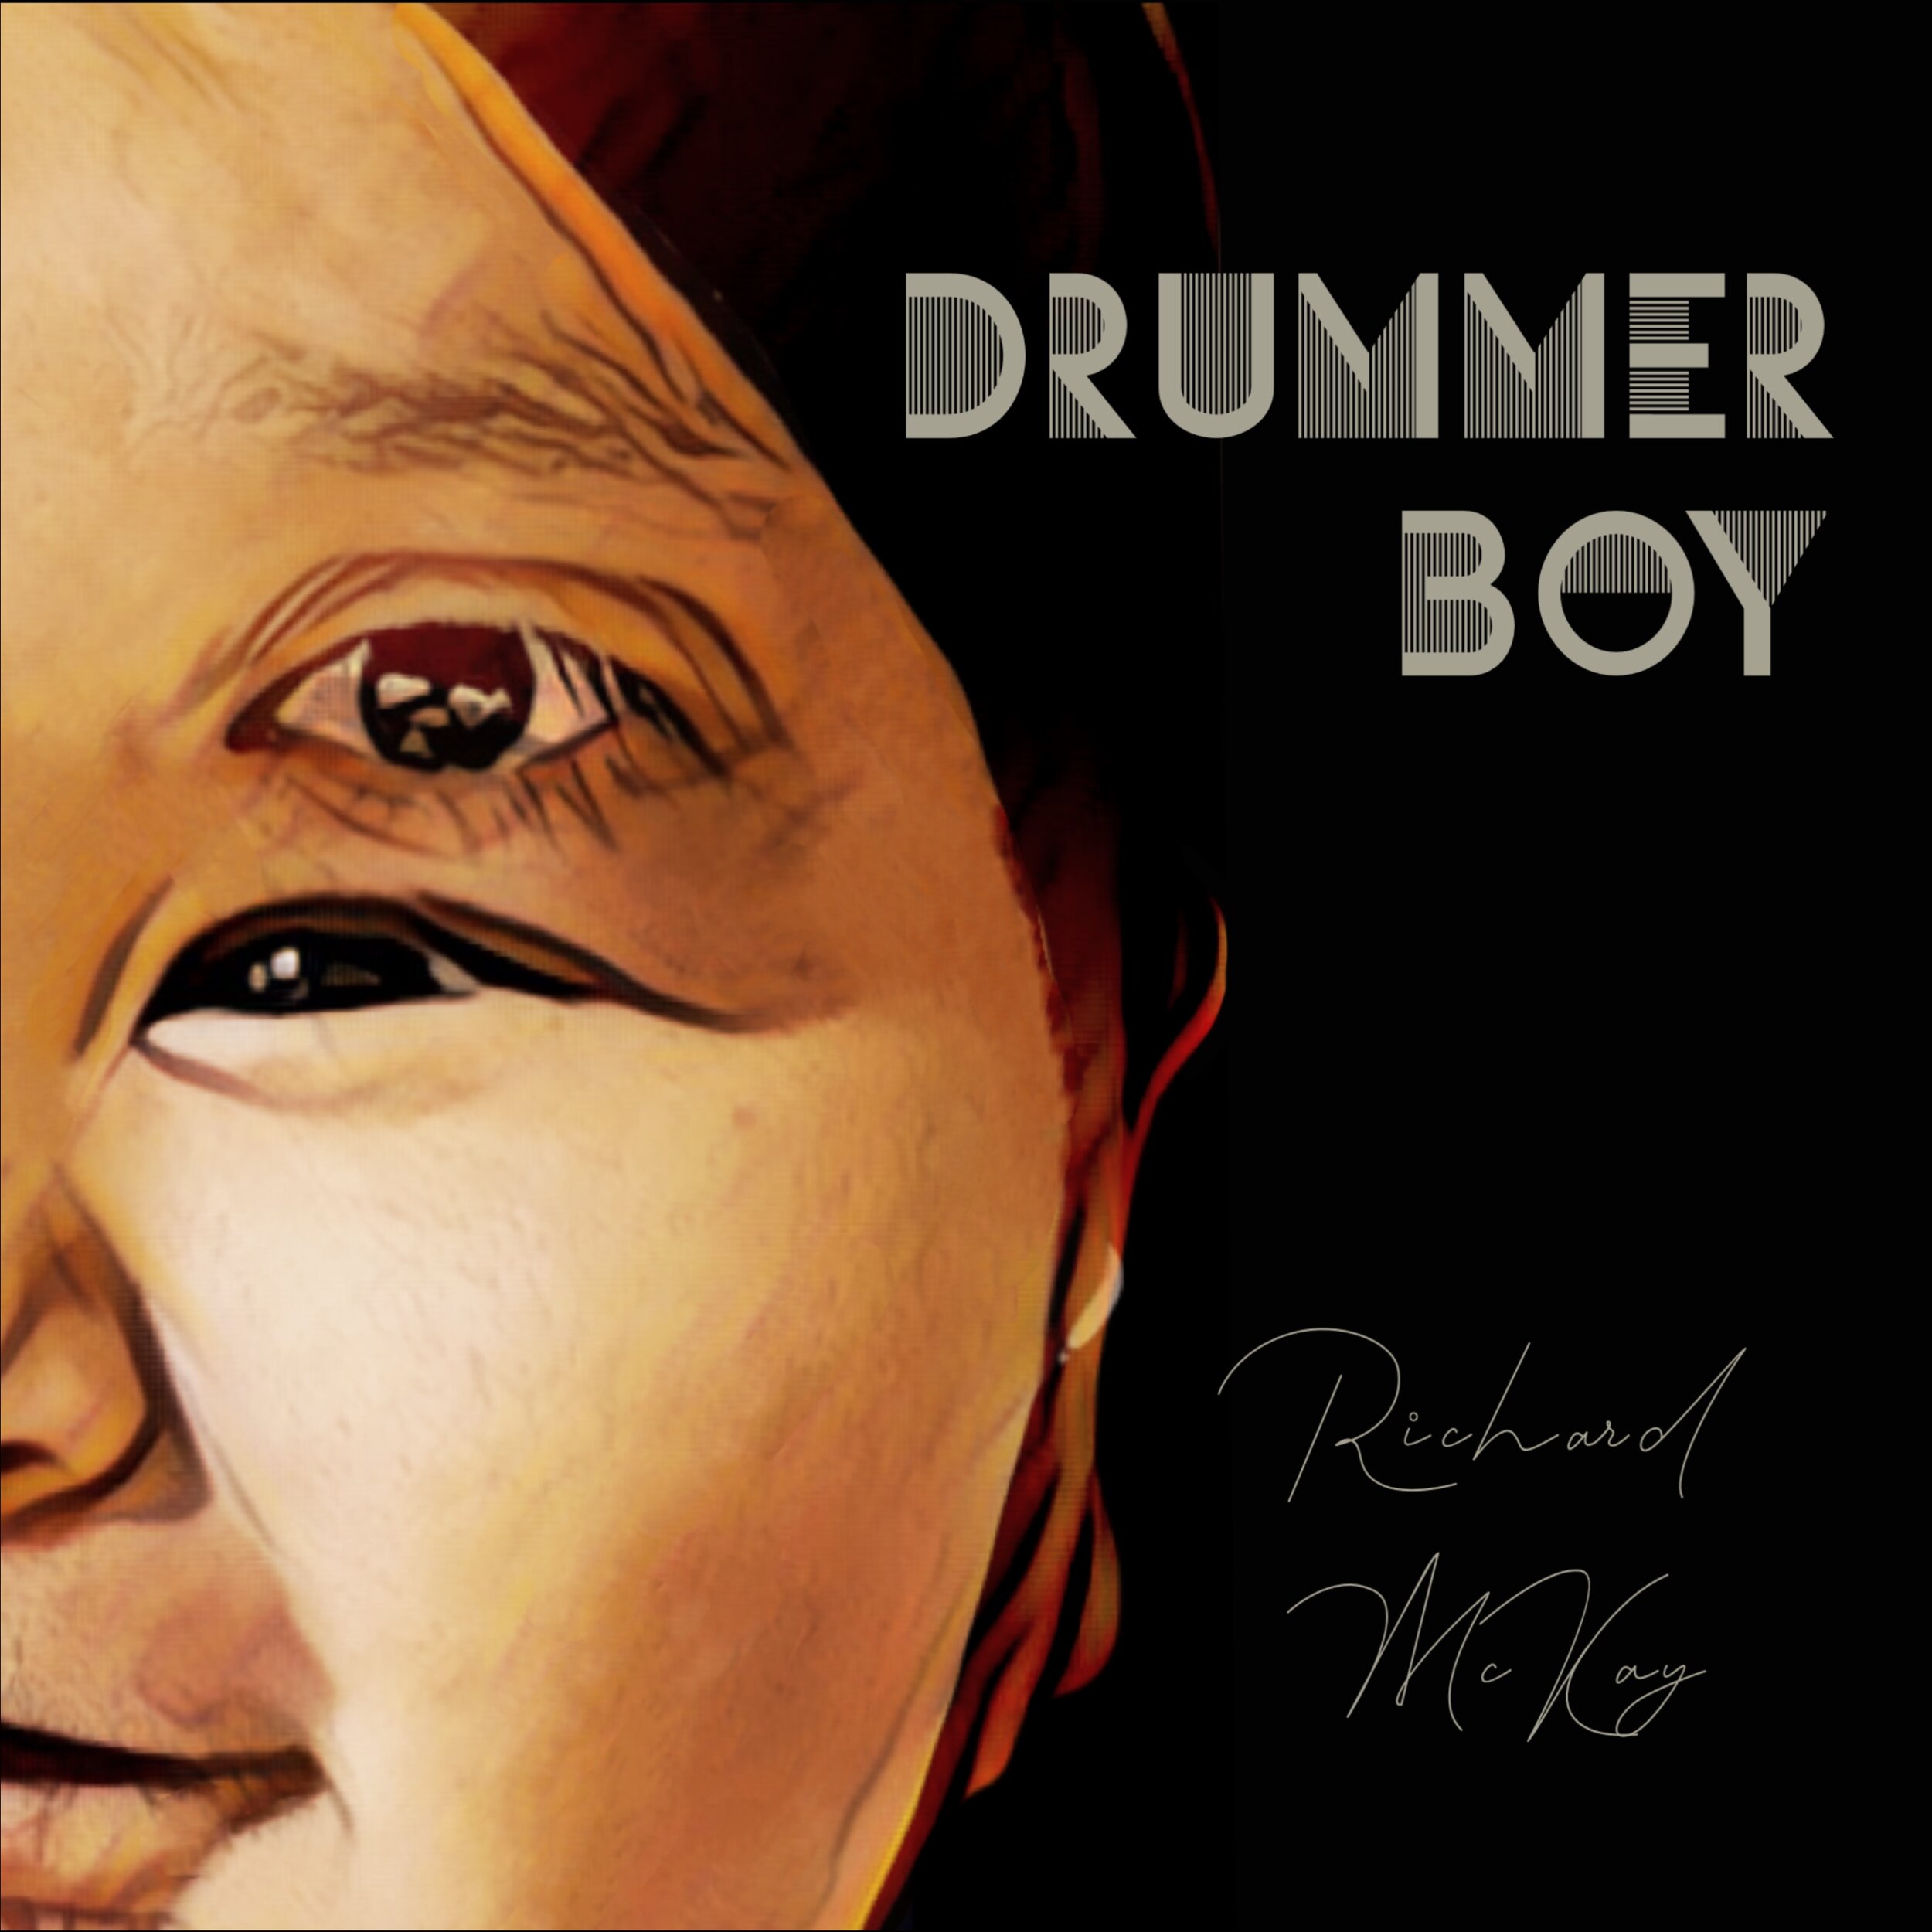 Richard Mckay - Drummer Boy